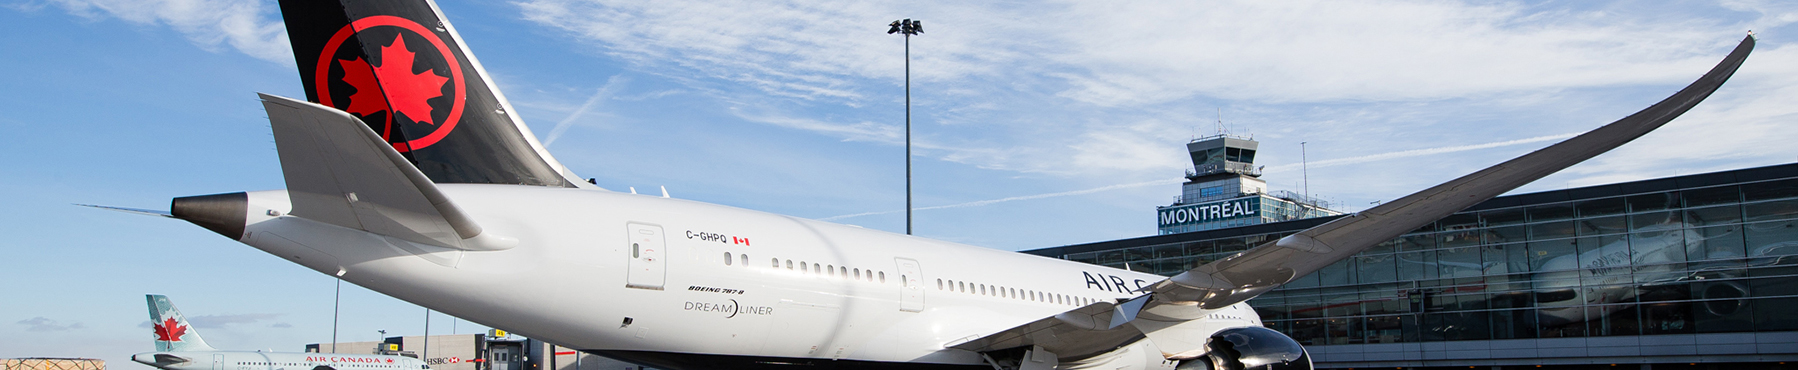 Umsteigen in Montreal – von internationalen Flügen auf innerkanadische Flüge